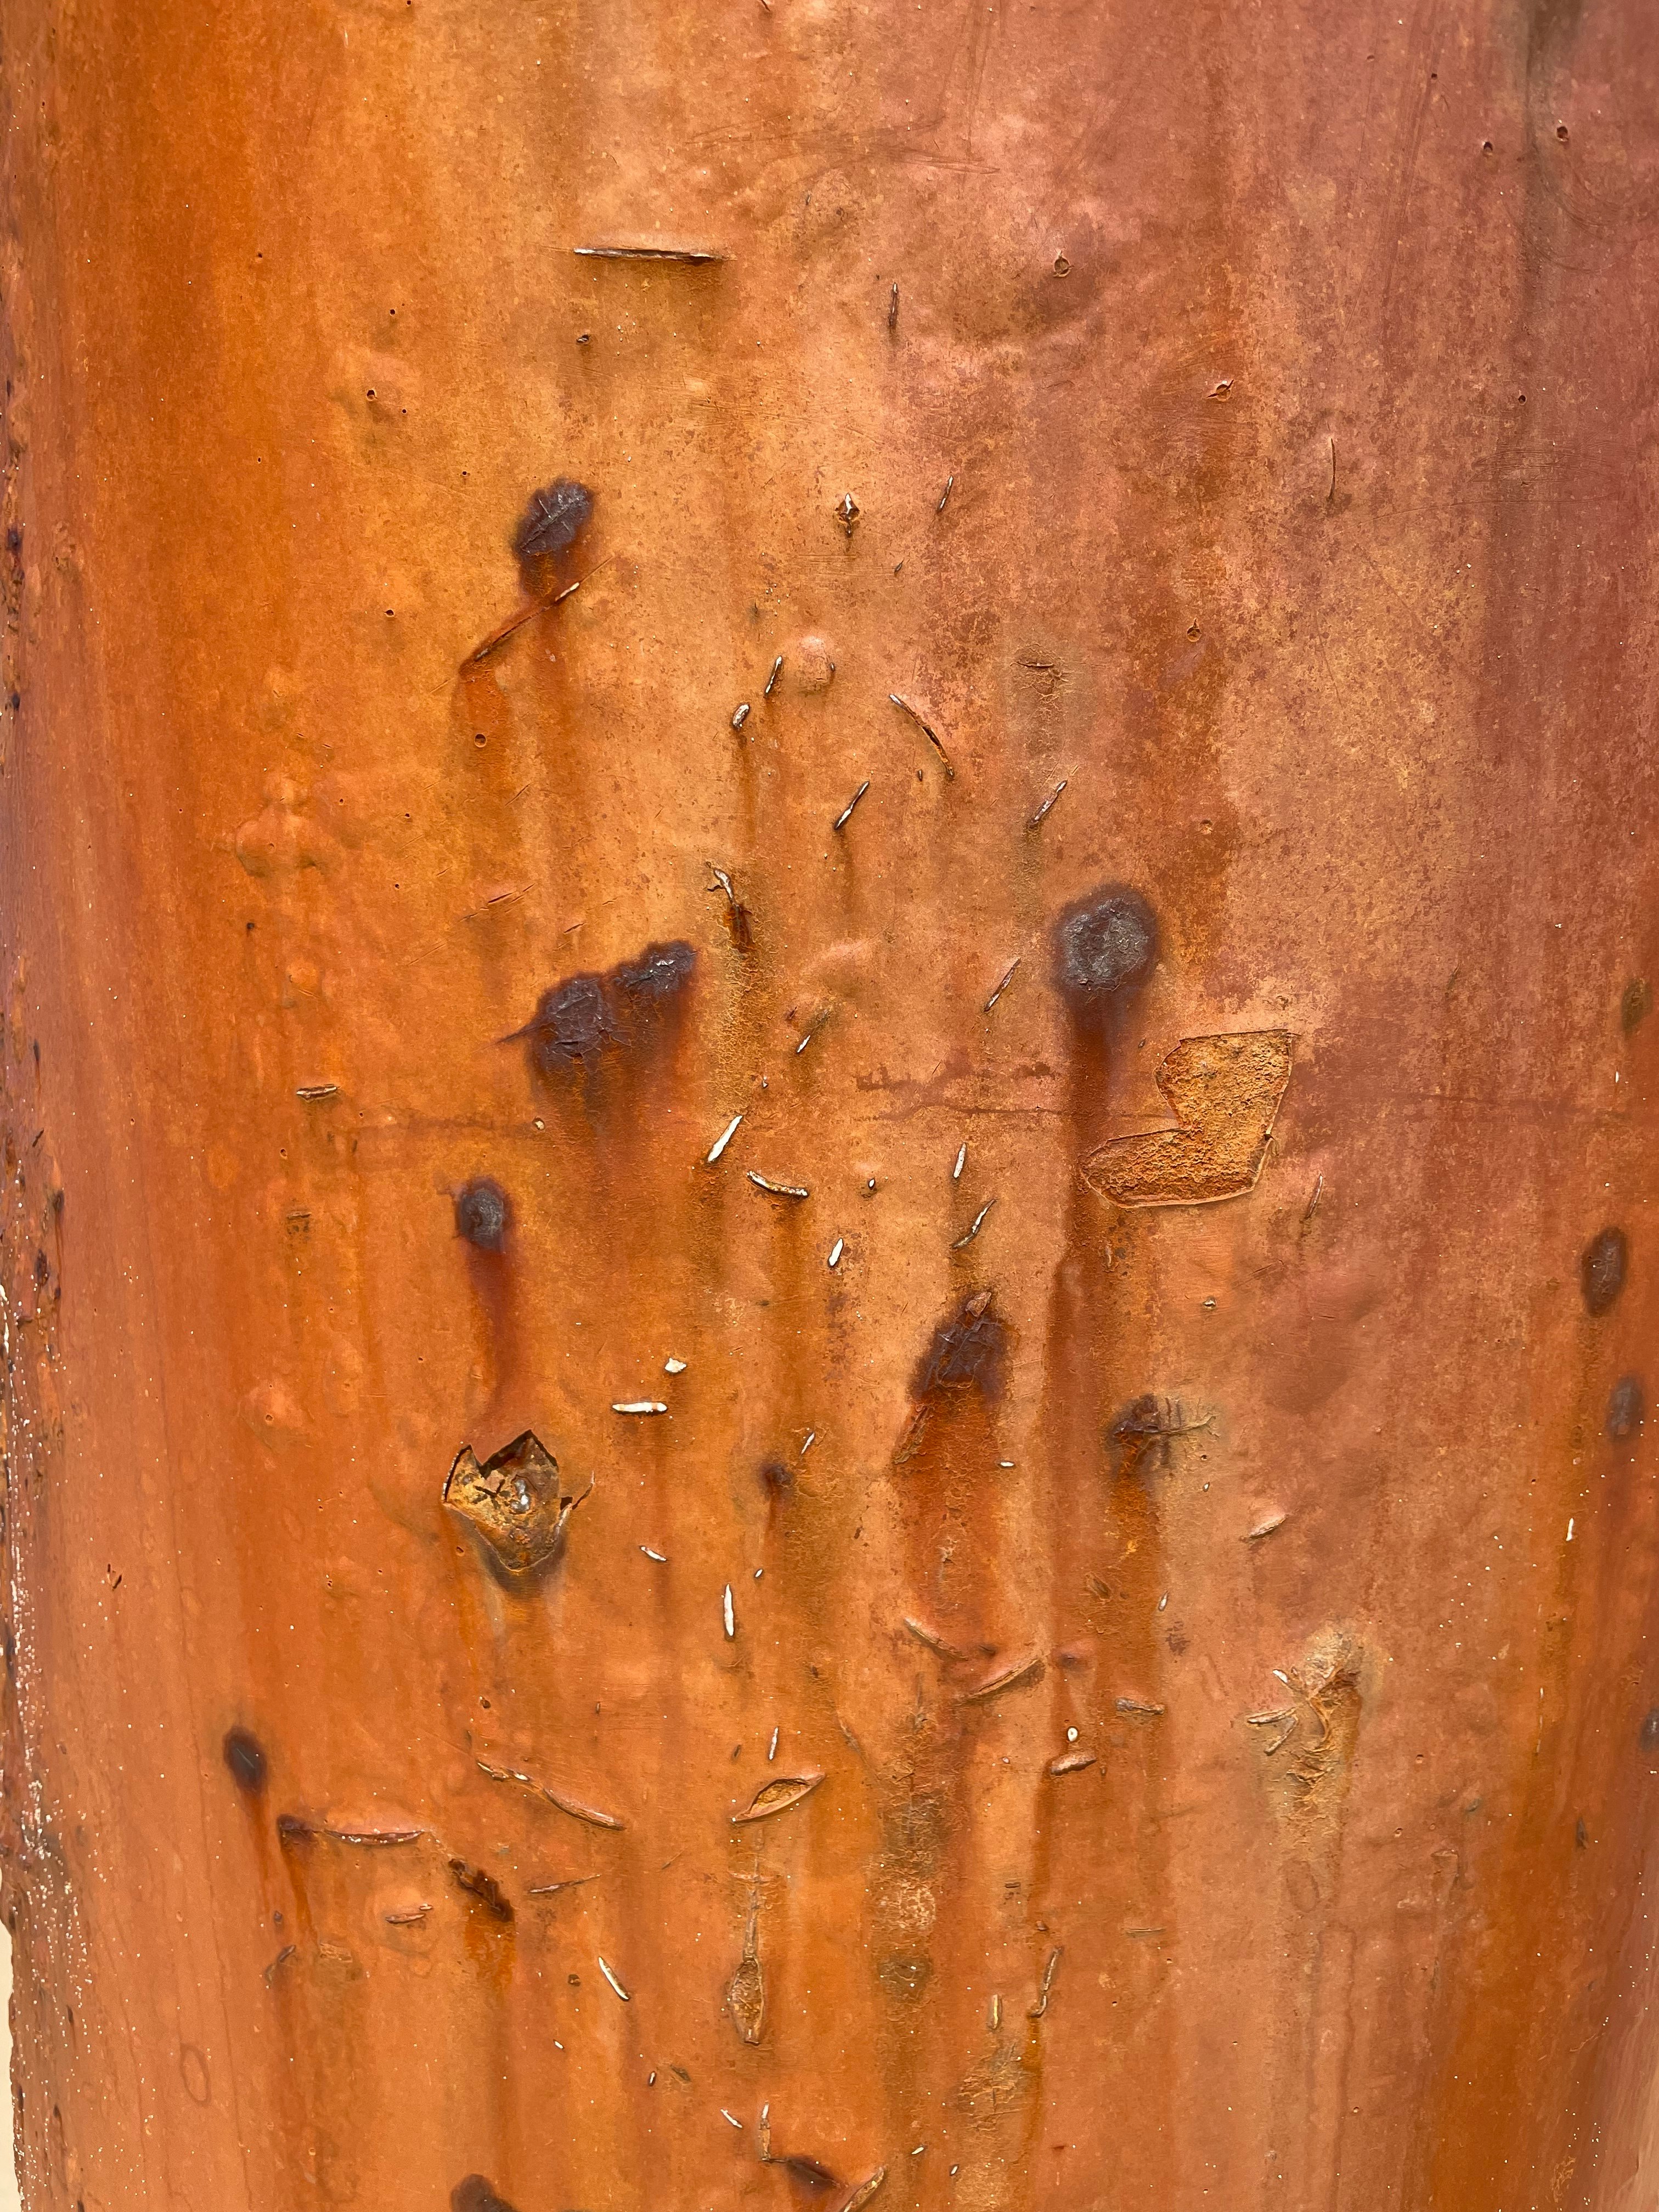 brown wooden door with water droplets